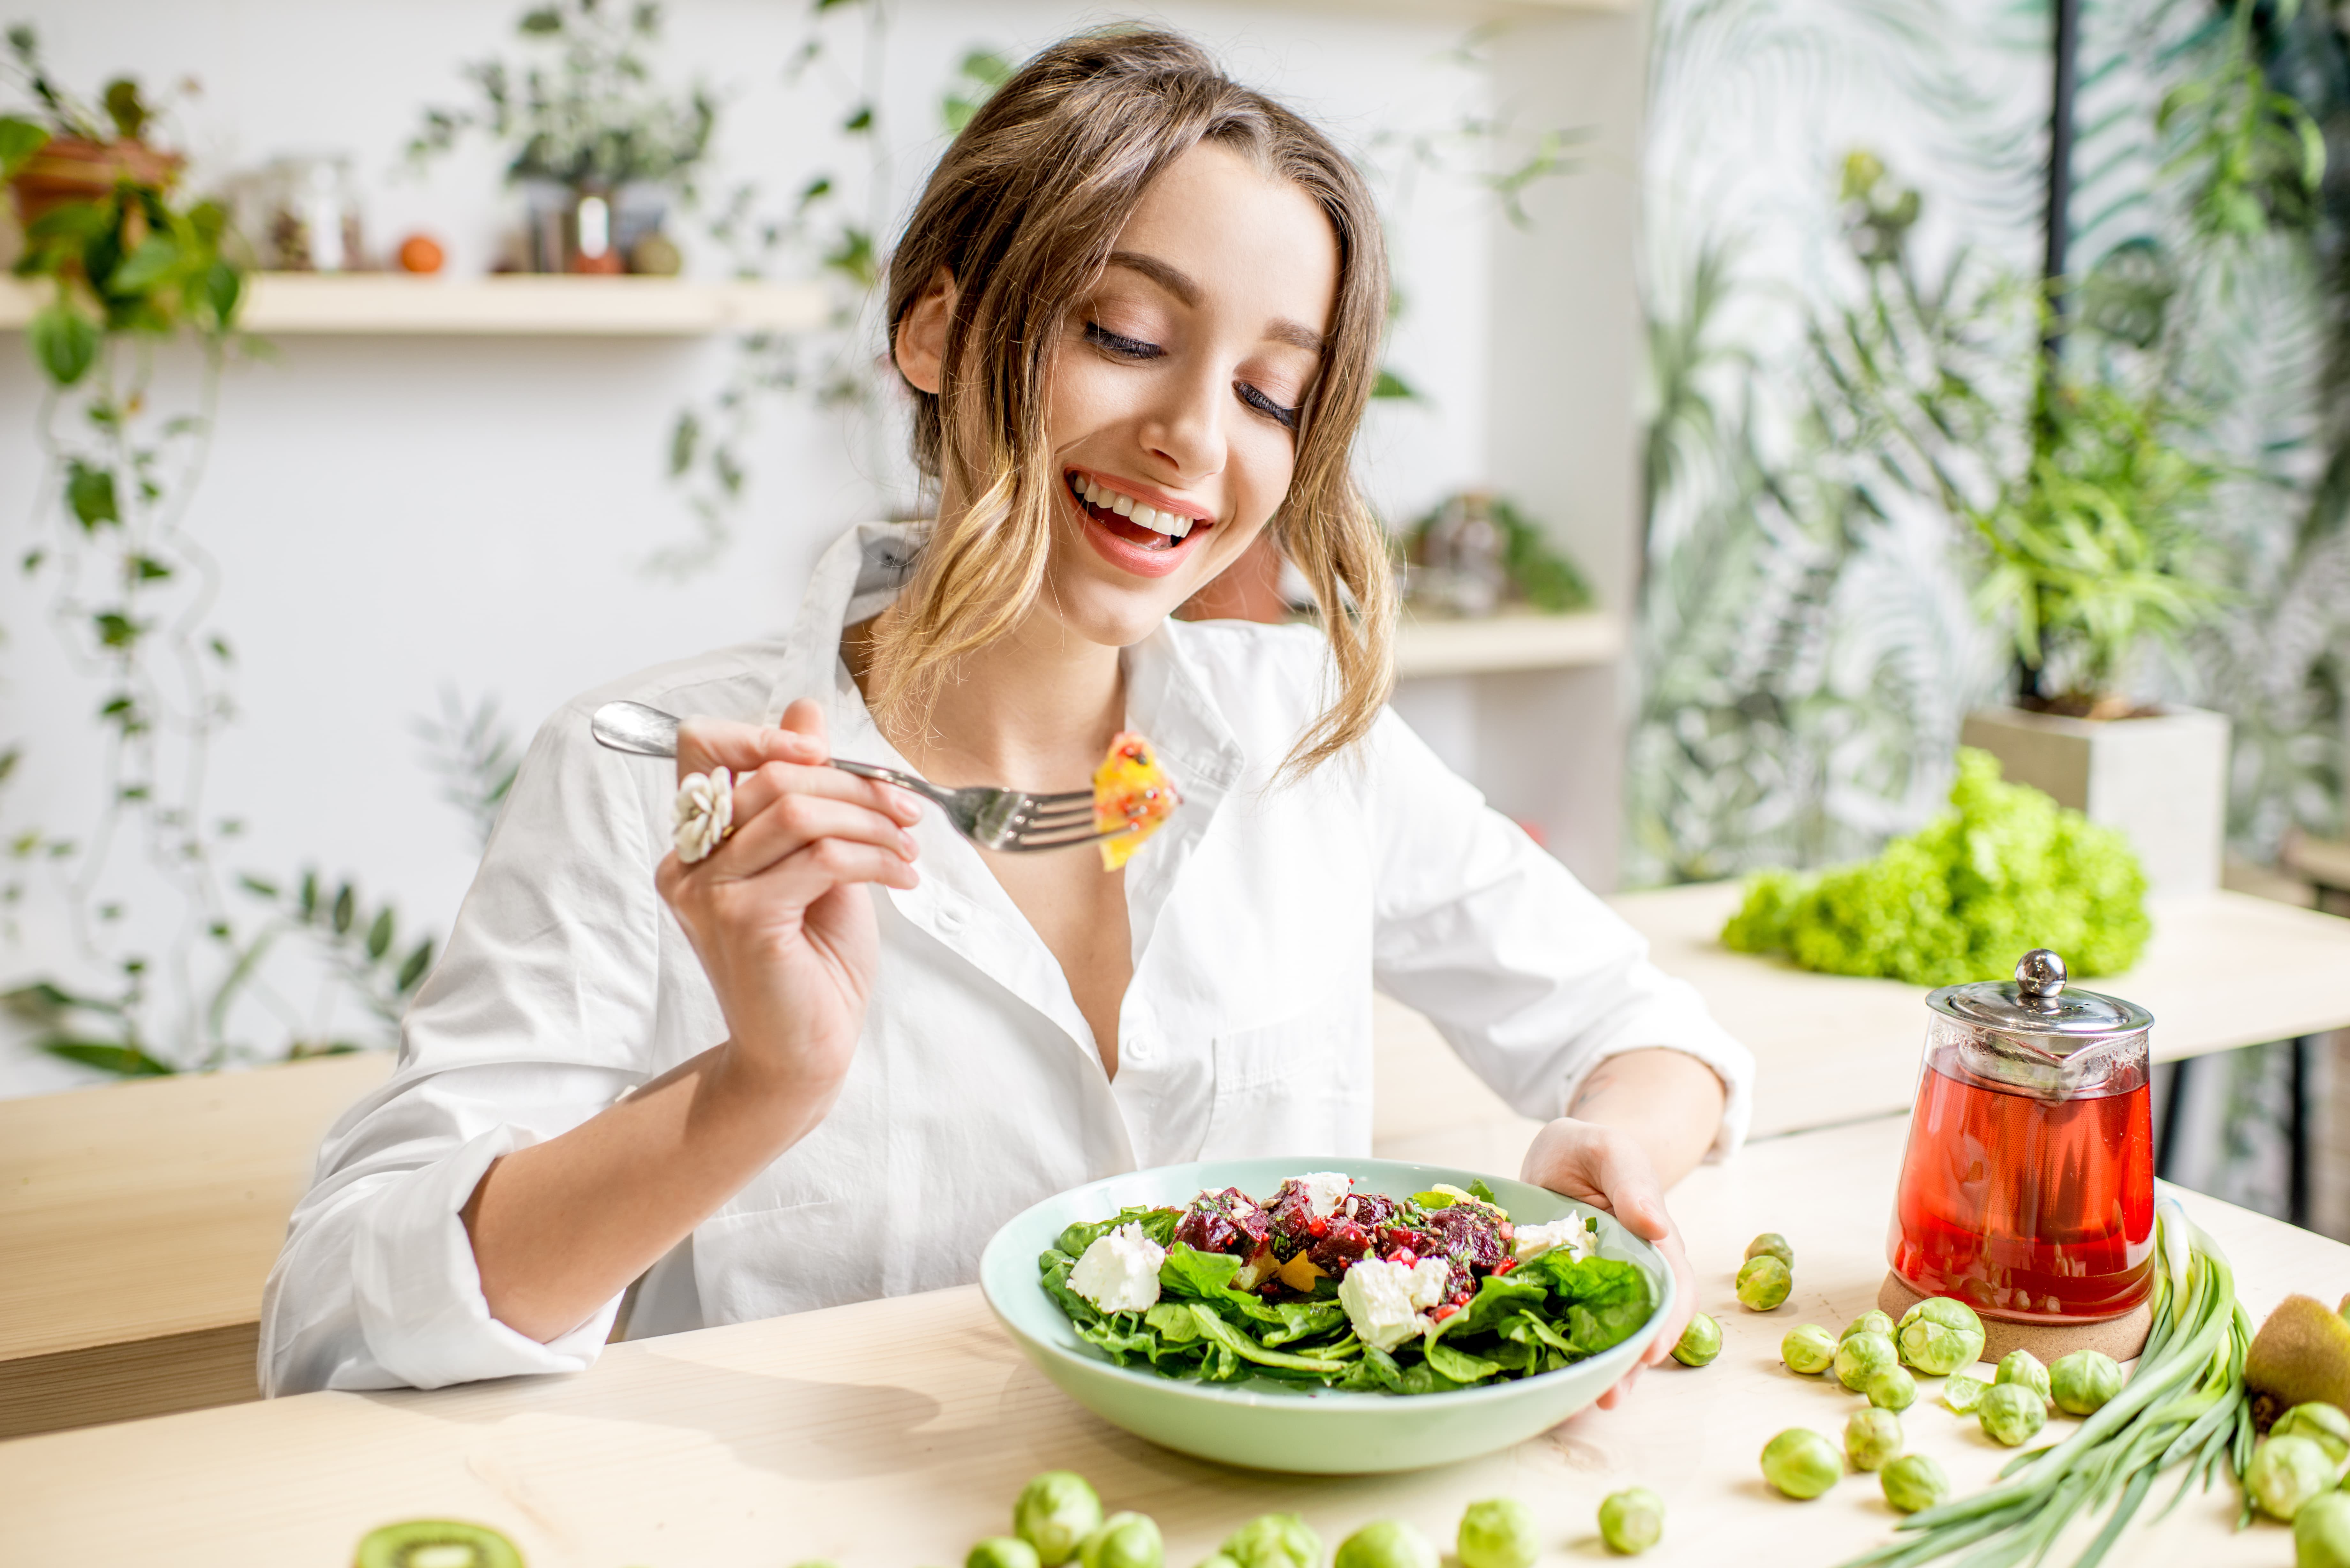 mujer rubia feliz vestida de blanco comiendo una ensalada saludable en un espacio decorado bonito con colores claros y mucha naturaleza